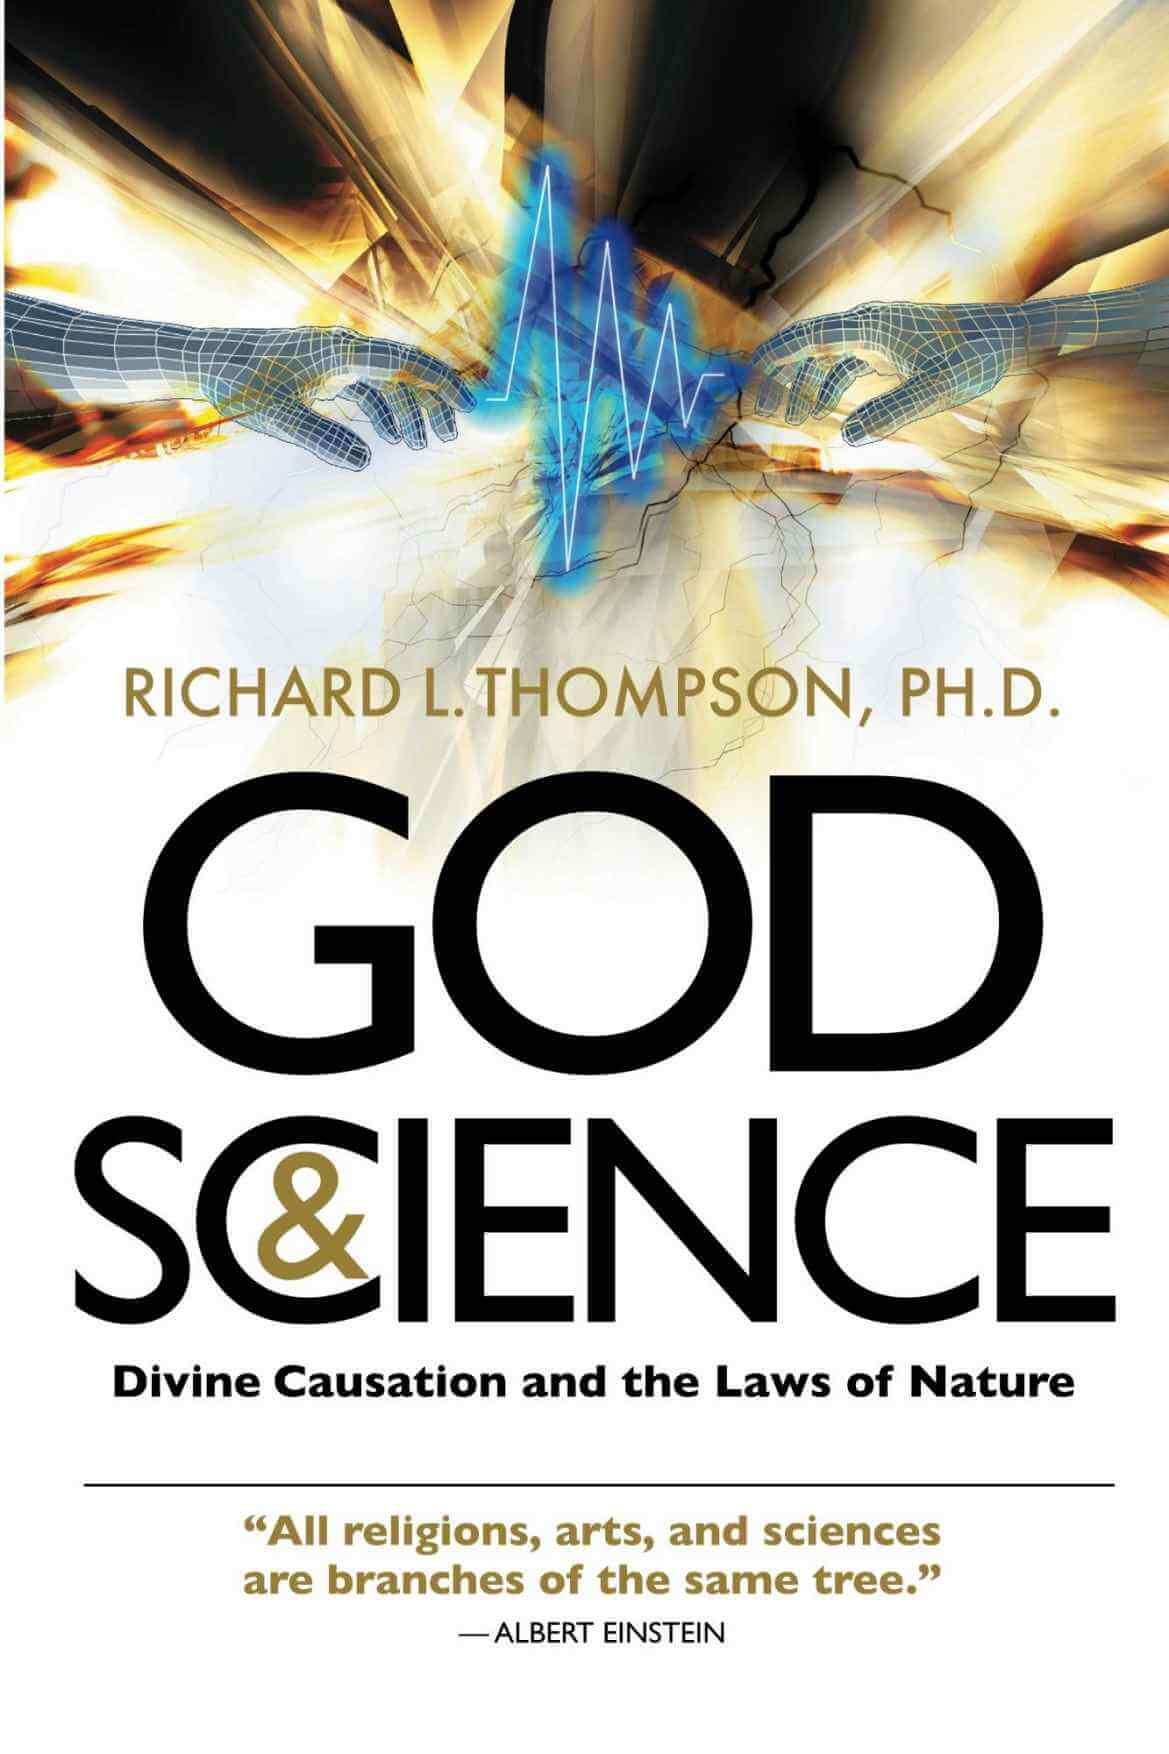 Dio e la scienza - Causalità divina e leggi della natura